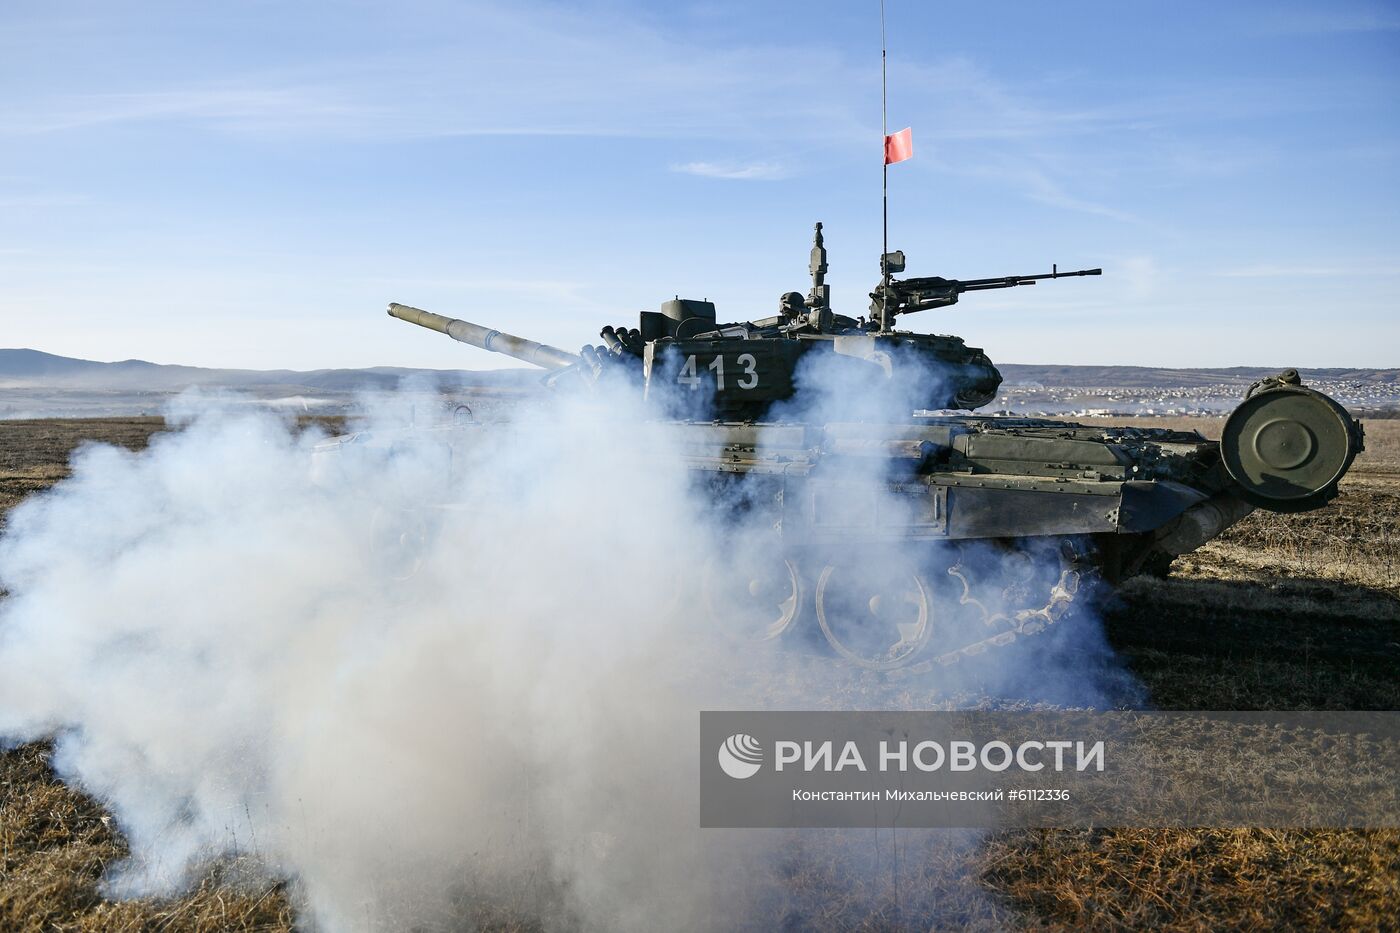 "Танковый биатлон" в Крыму